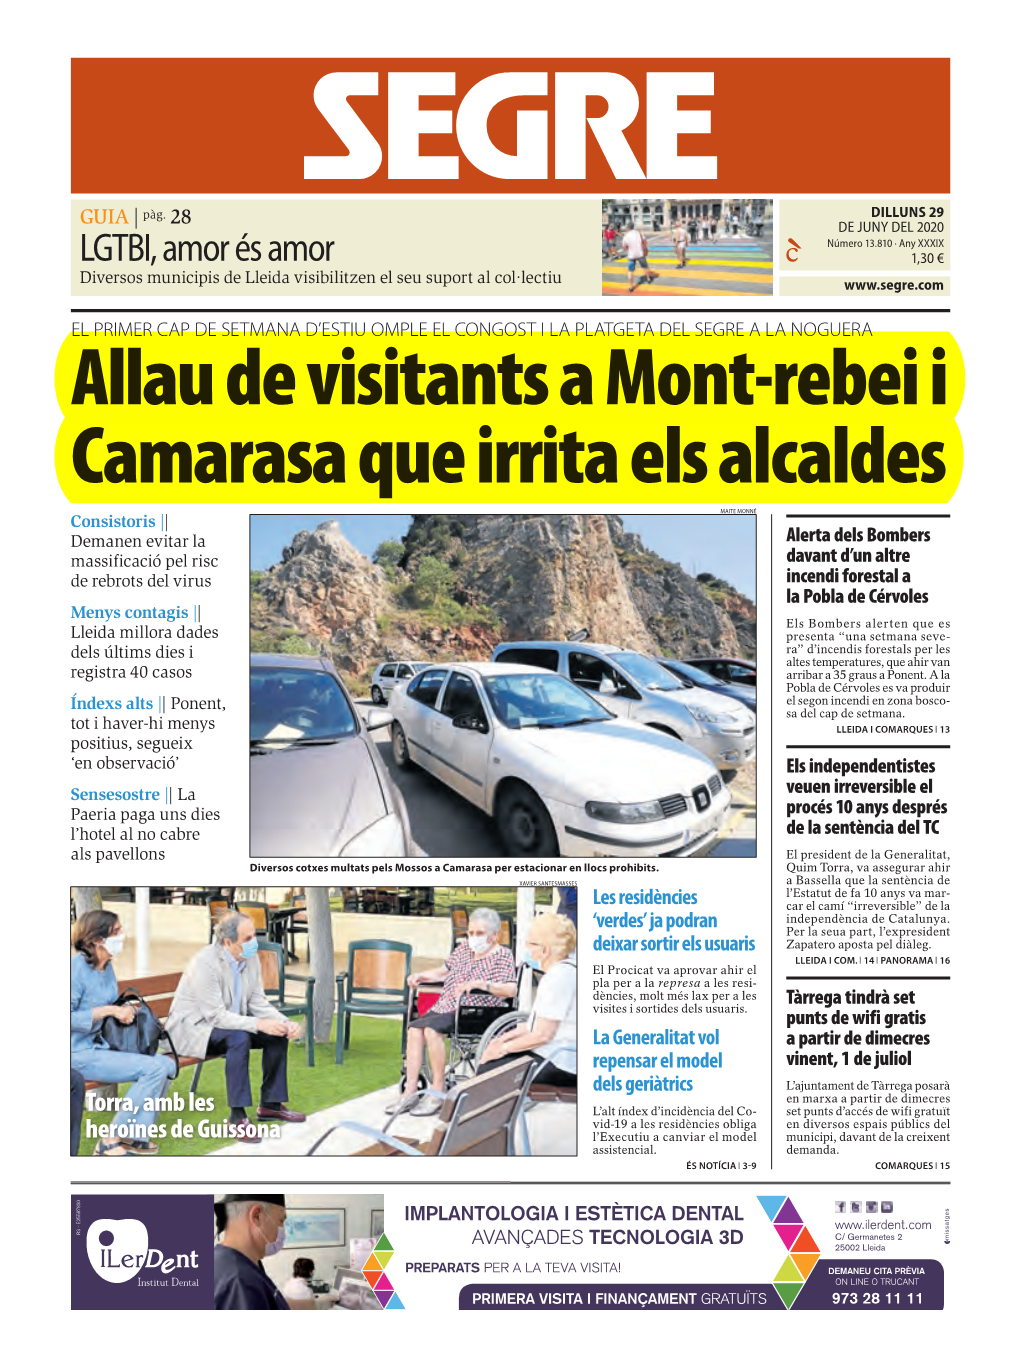 Allau De Visitants a Mont-Rebei I Camarasa Que Irrita Els Alcaldes